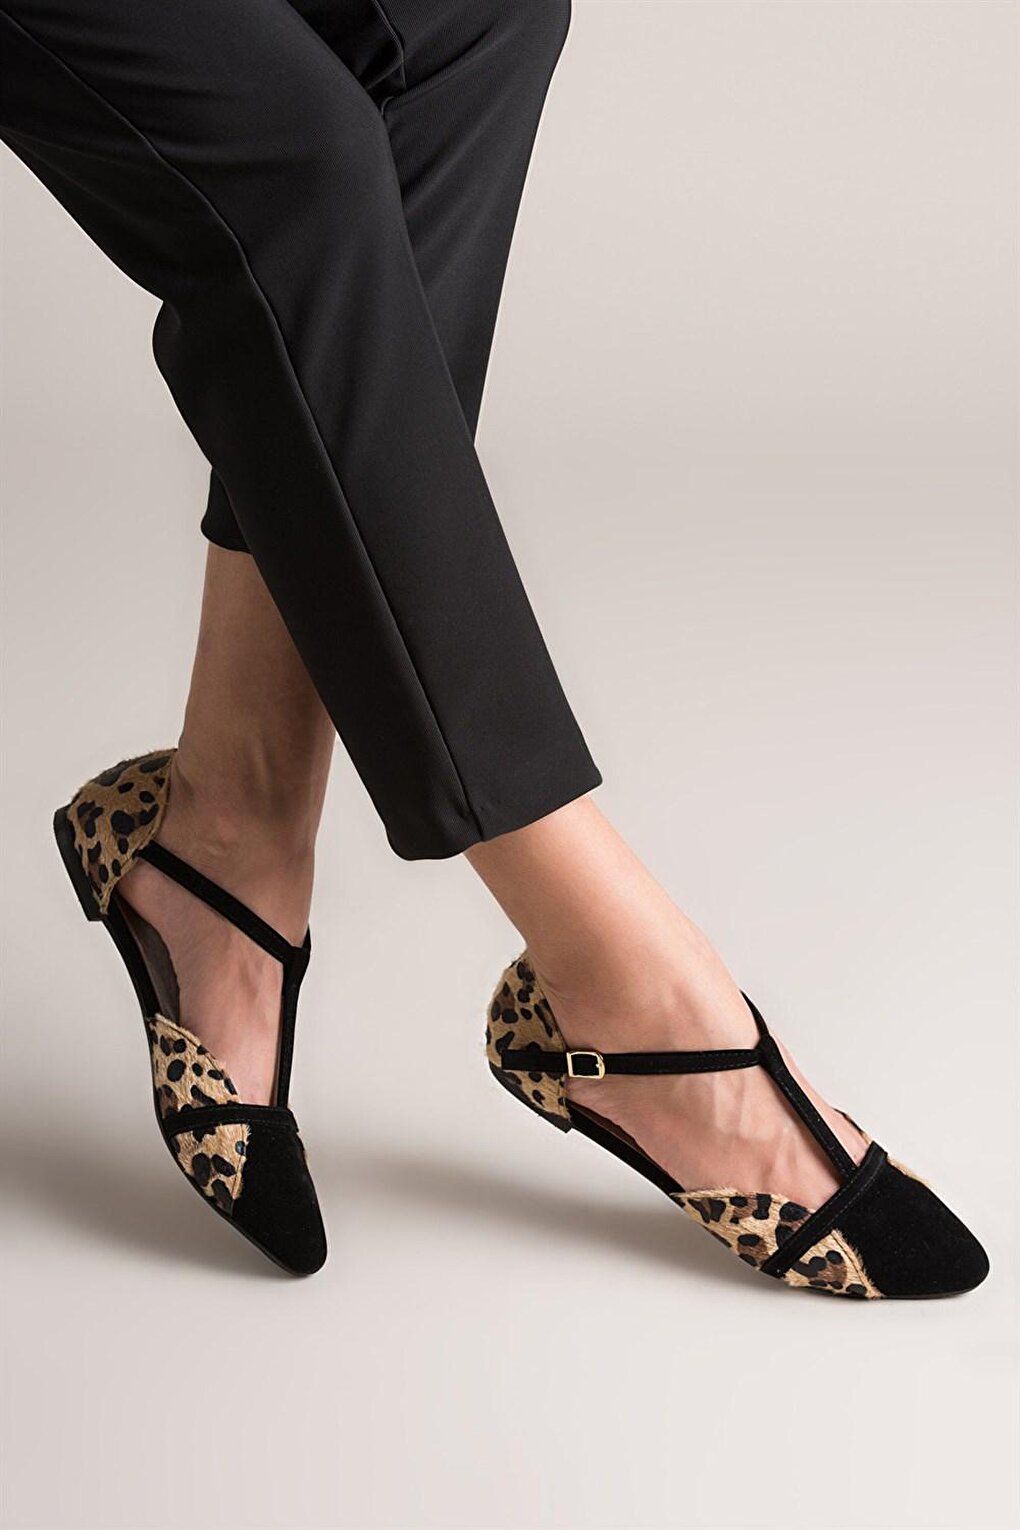 леопардовые черные женские балетки b726881802 fox shoes Леопардовые/черные женские балетки B726881802 Fox Shoes